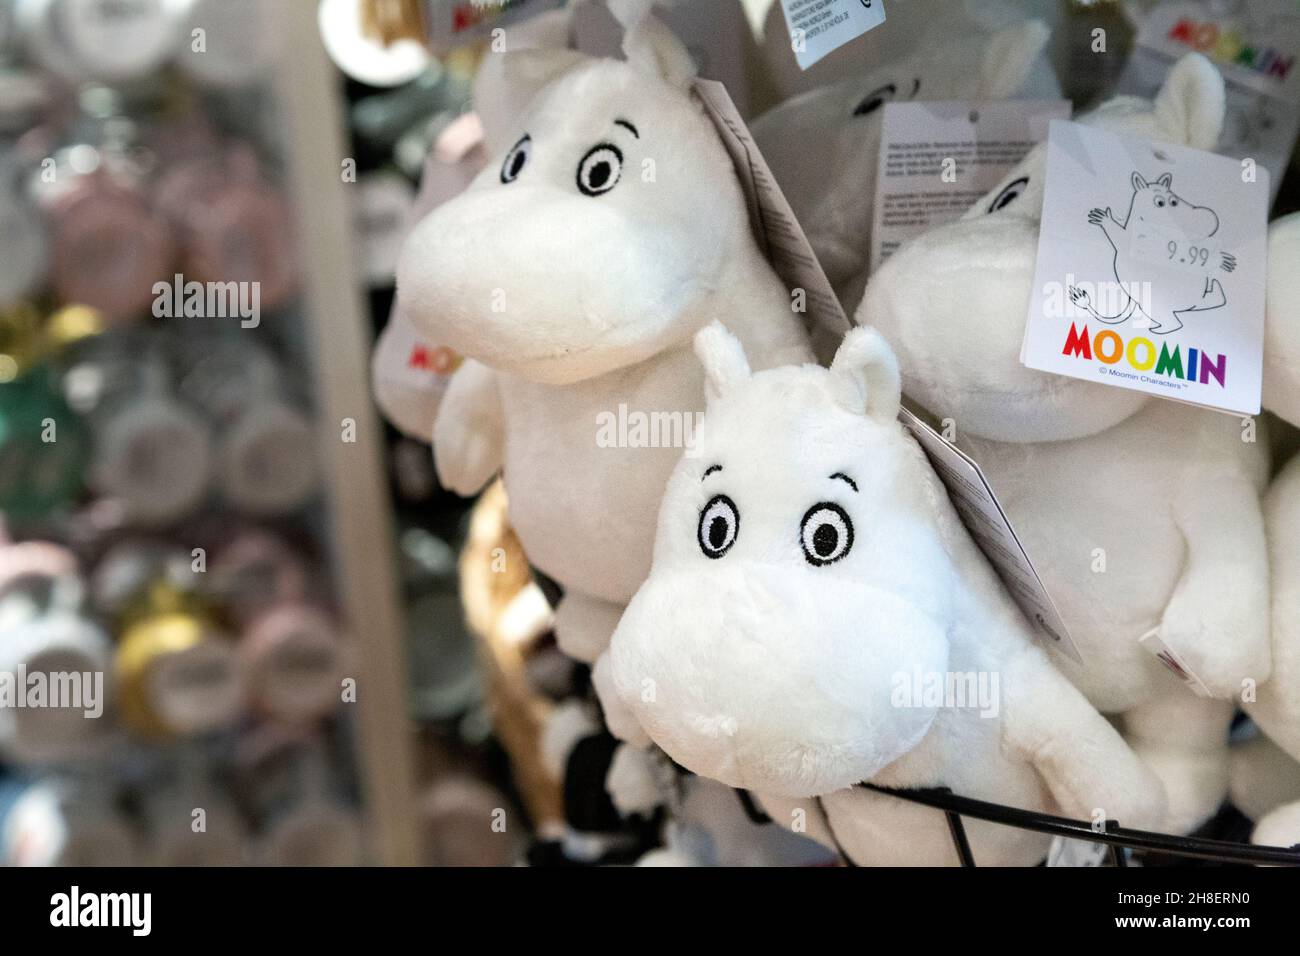 Jouets en peluche moomin au magasin Moomin de Covent Garden Market, Londres, Royaume-Uni Banque D'Images